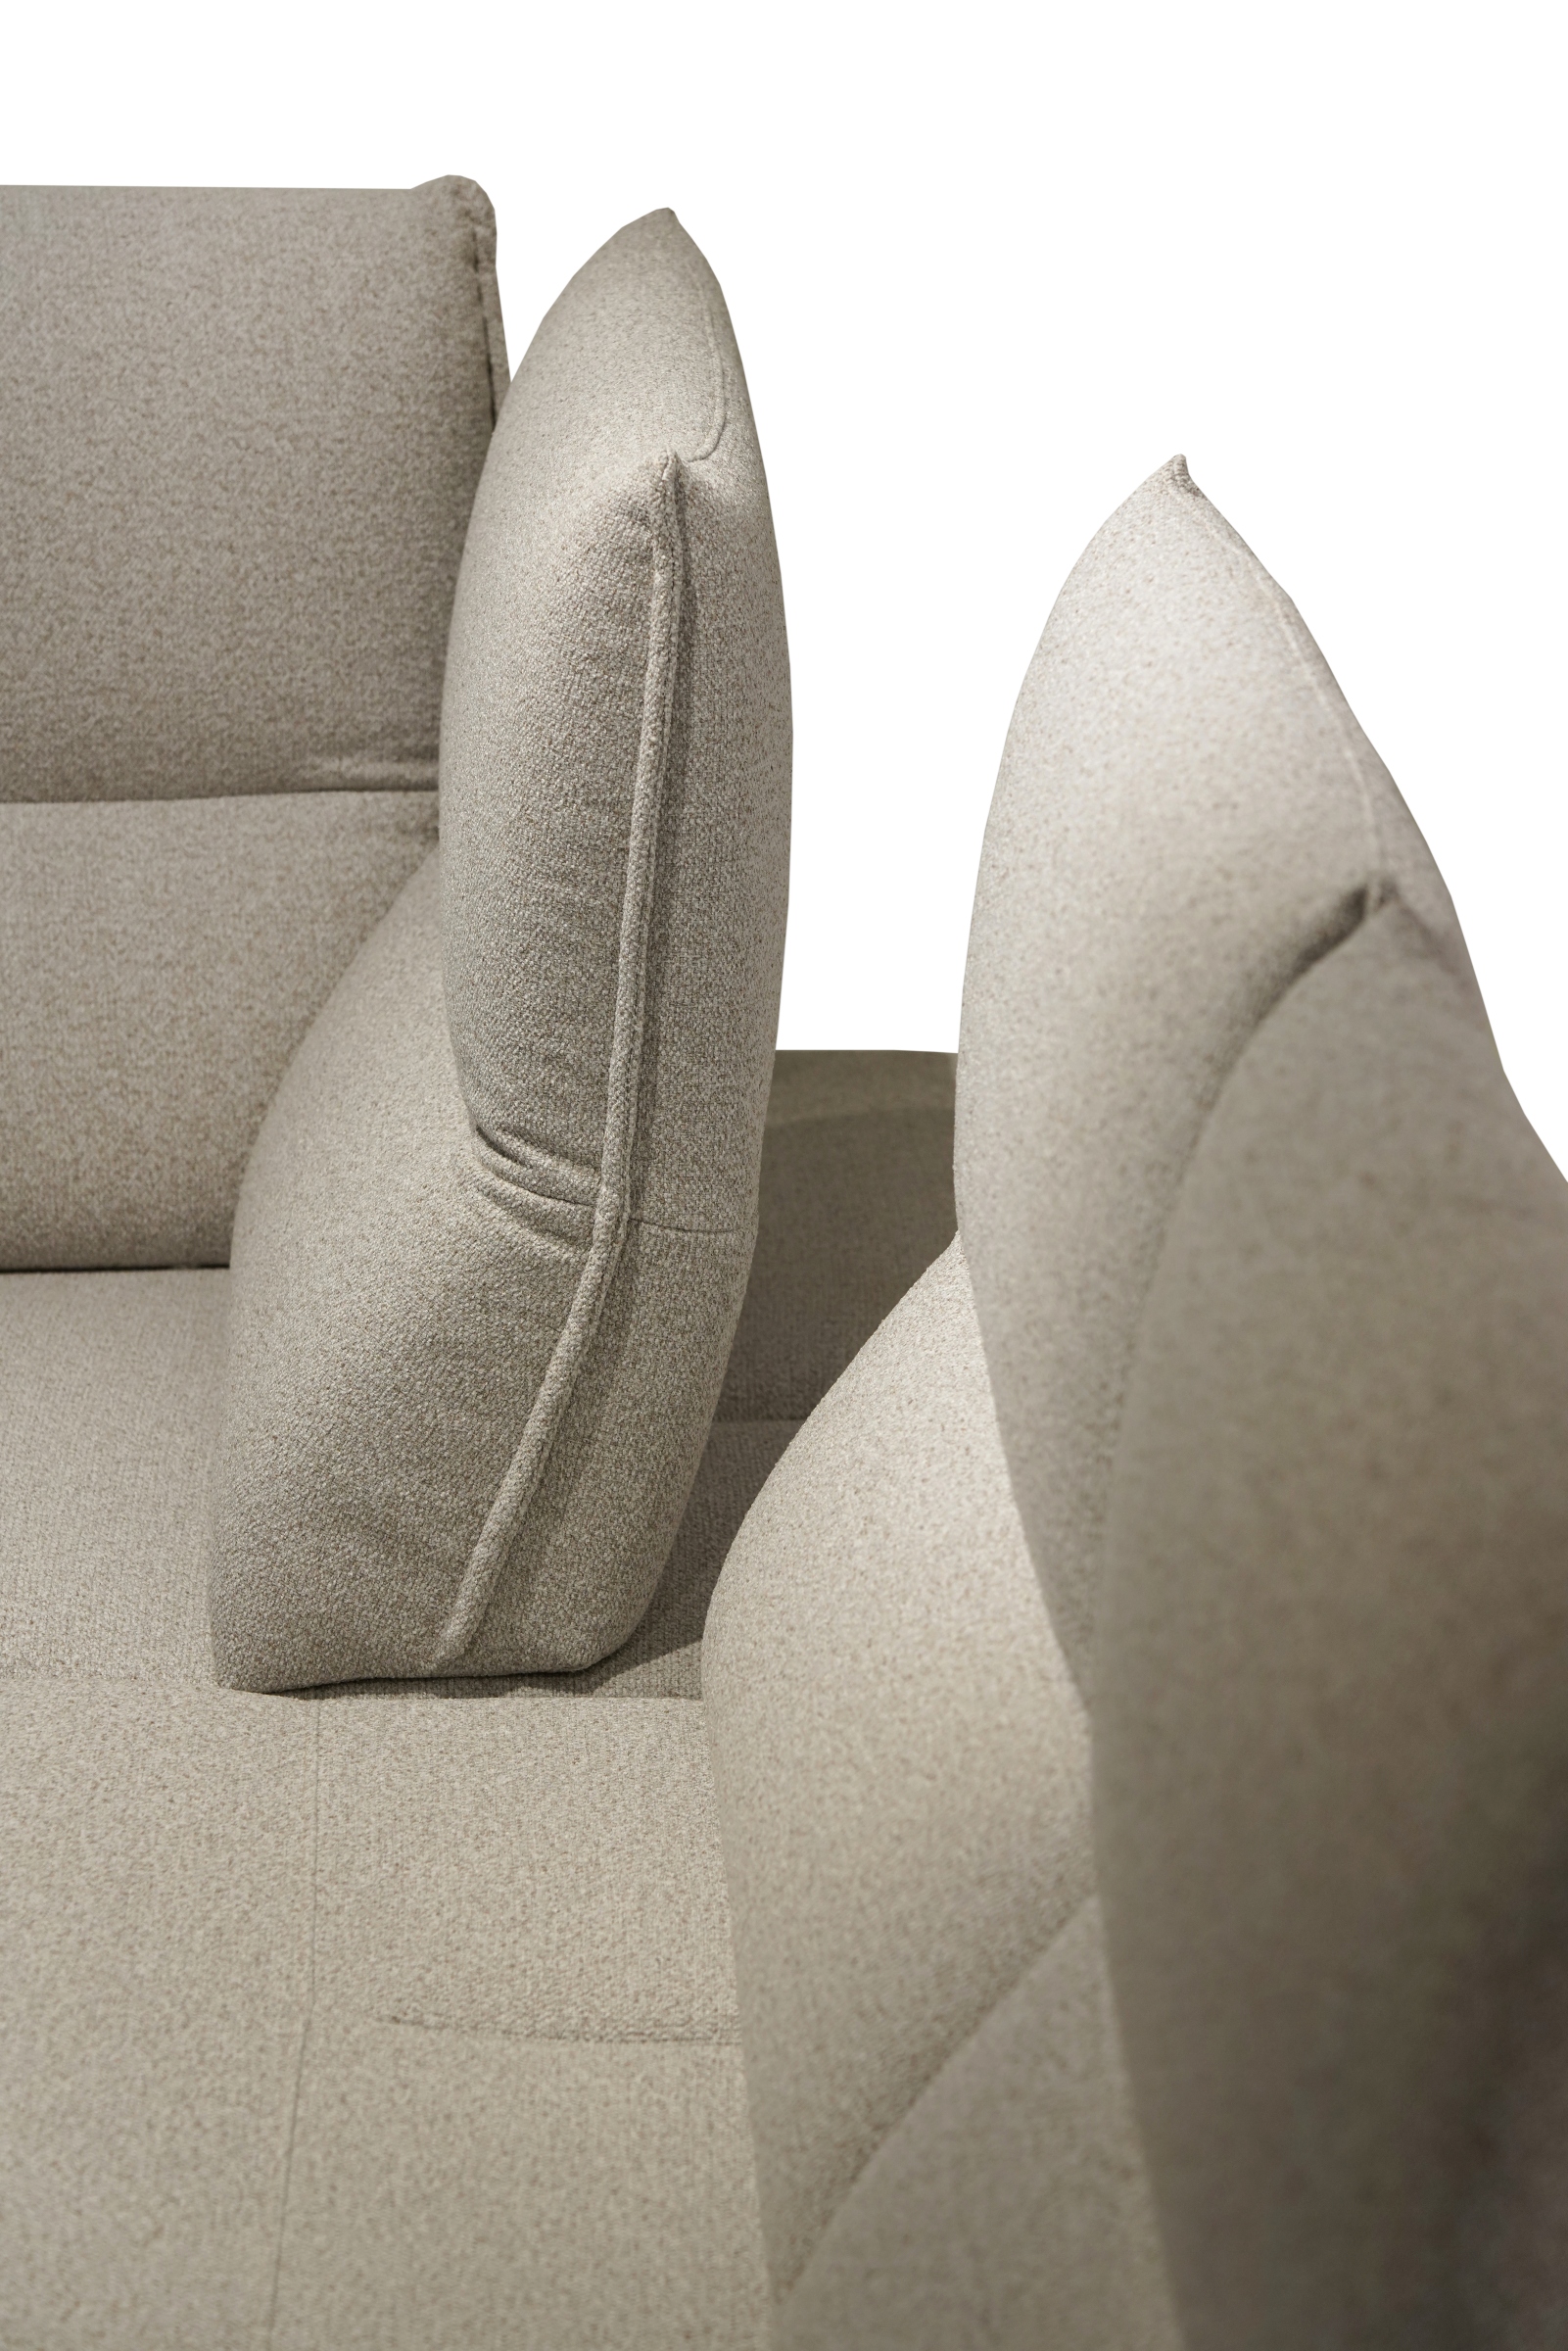 Naroznik z ruchomymi, przesuwnymi oparciami dodającymi komfortu siedzenia. Designerskie rozwiązanie dla wymagających. meble Dobrodzienia